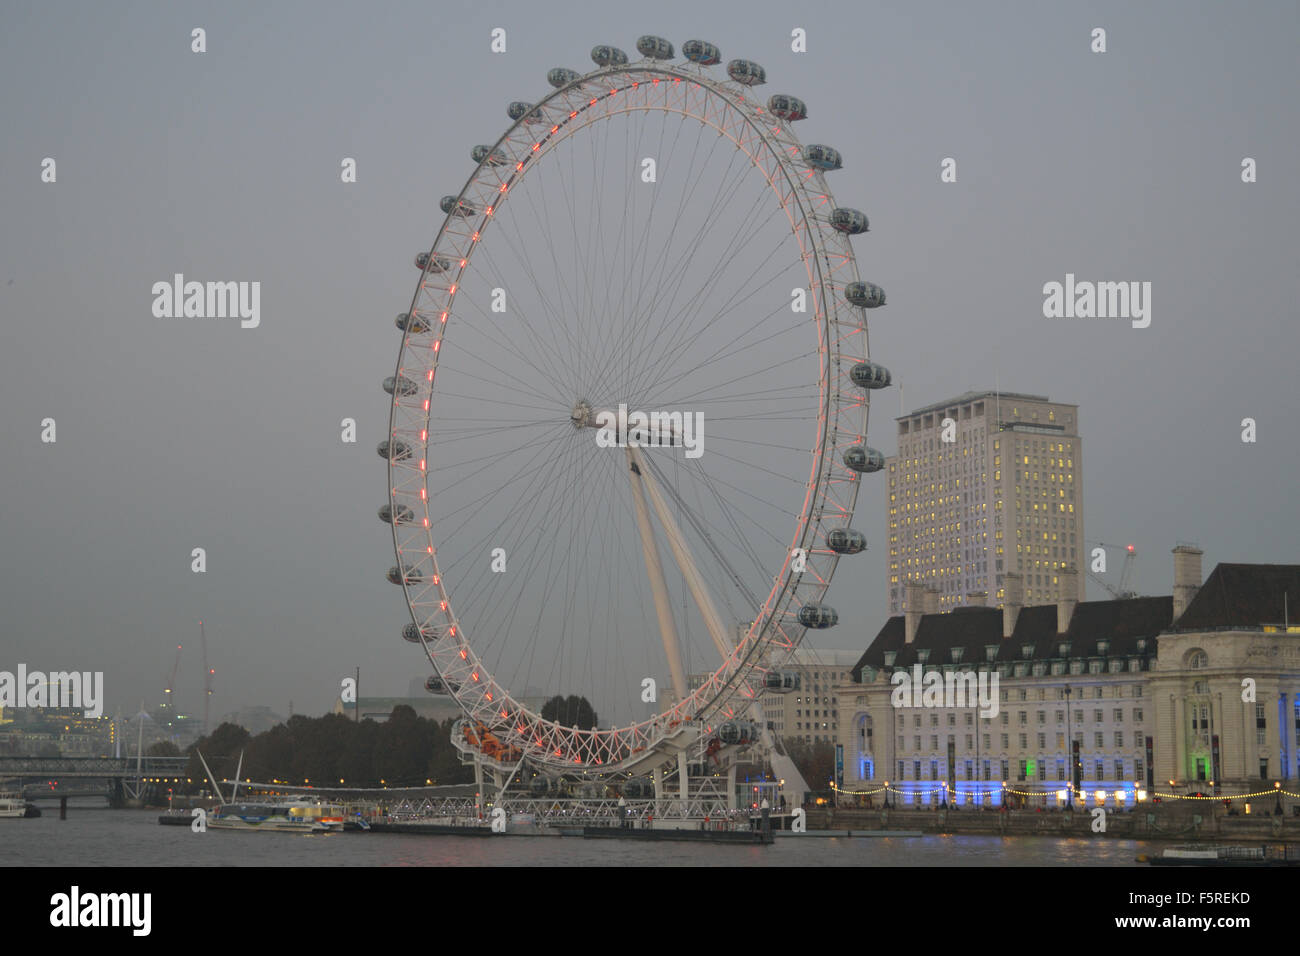 London eye gondola hi-res stock photography and images - Alamy